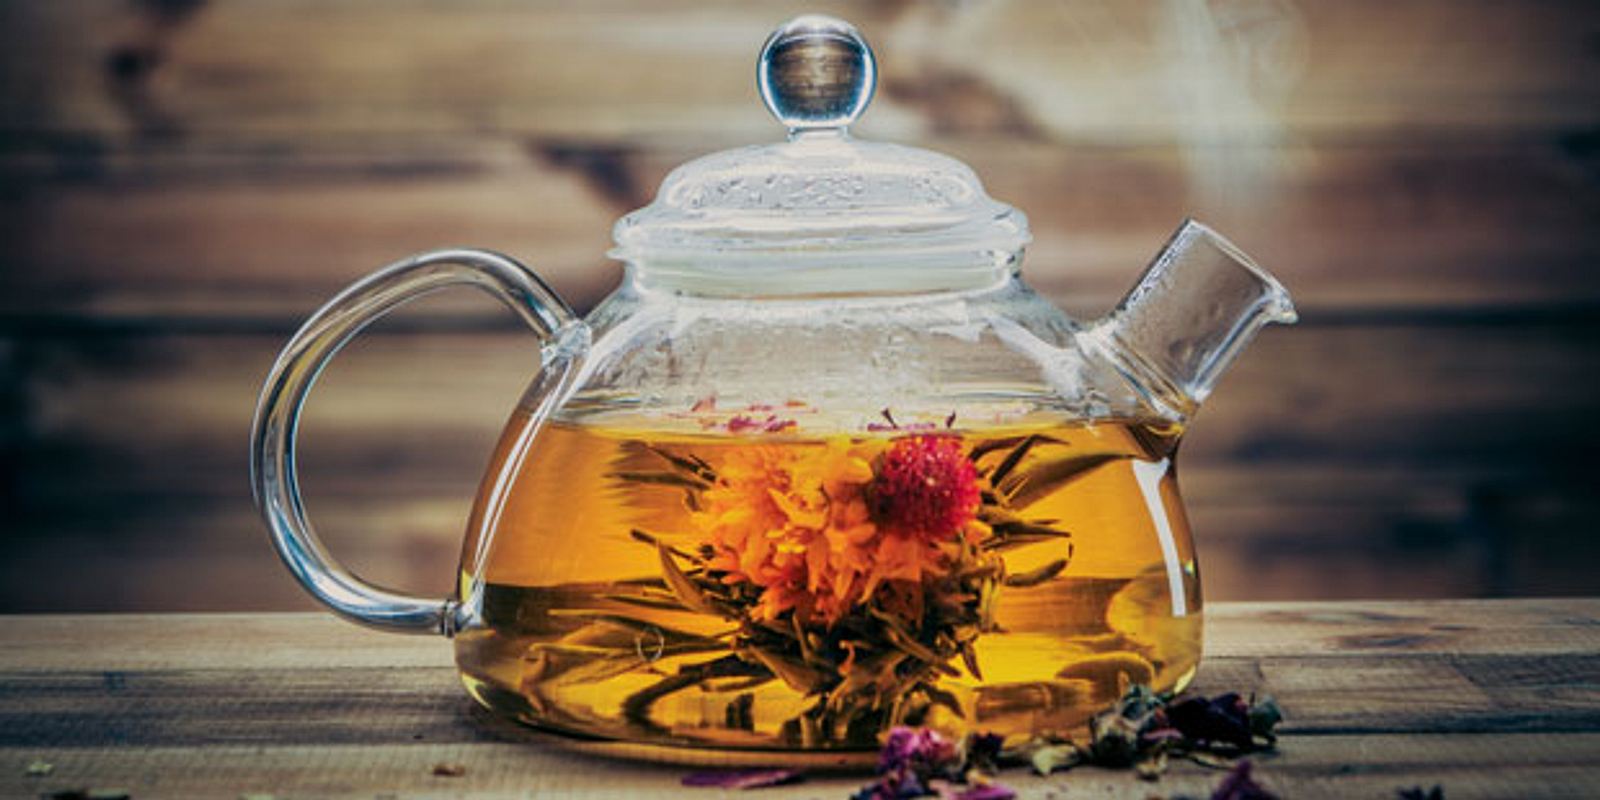 Чай в чайнике. Травяной чай в чайнике. Чайник с чаем. Красивый чайник с чаем.